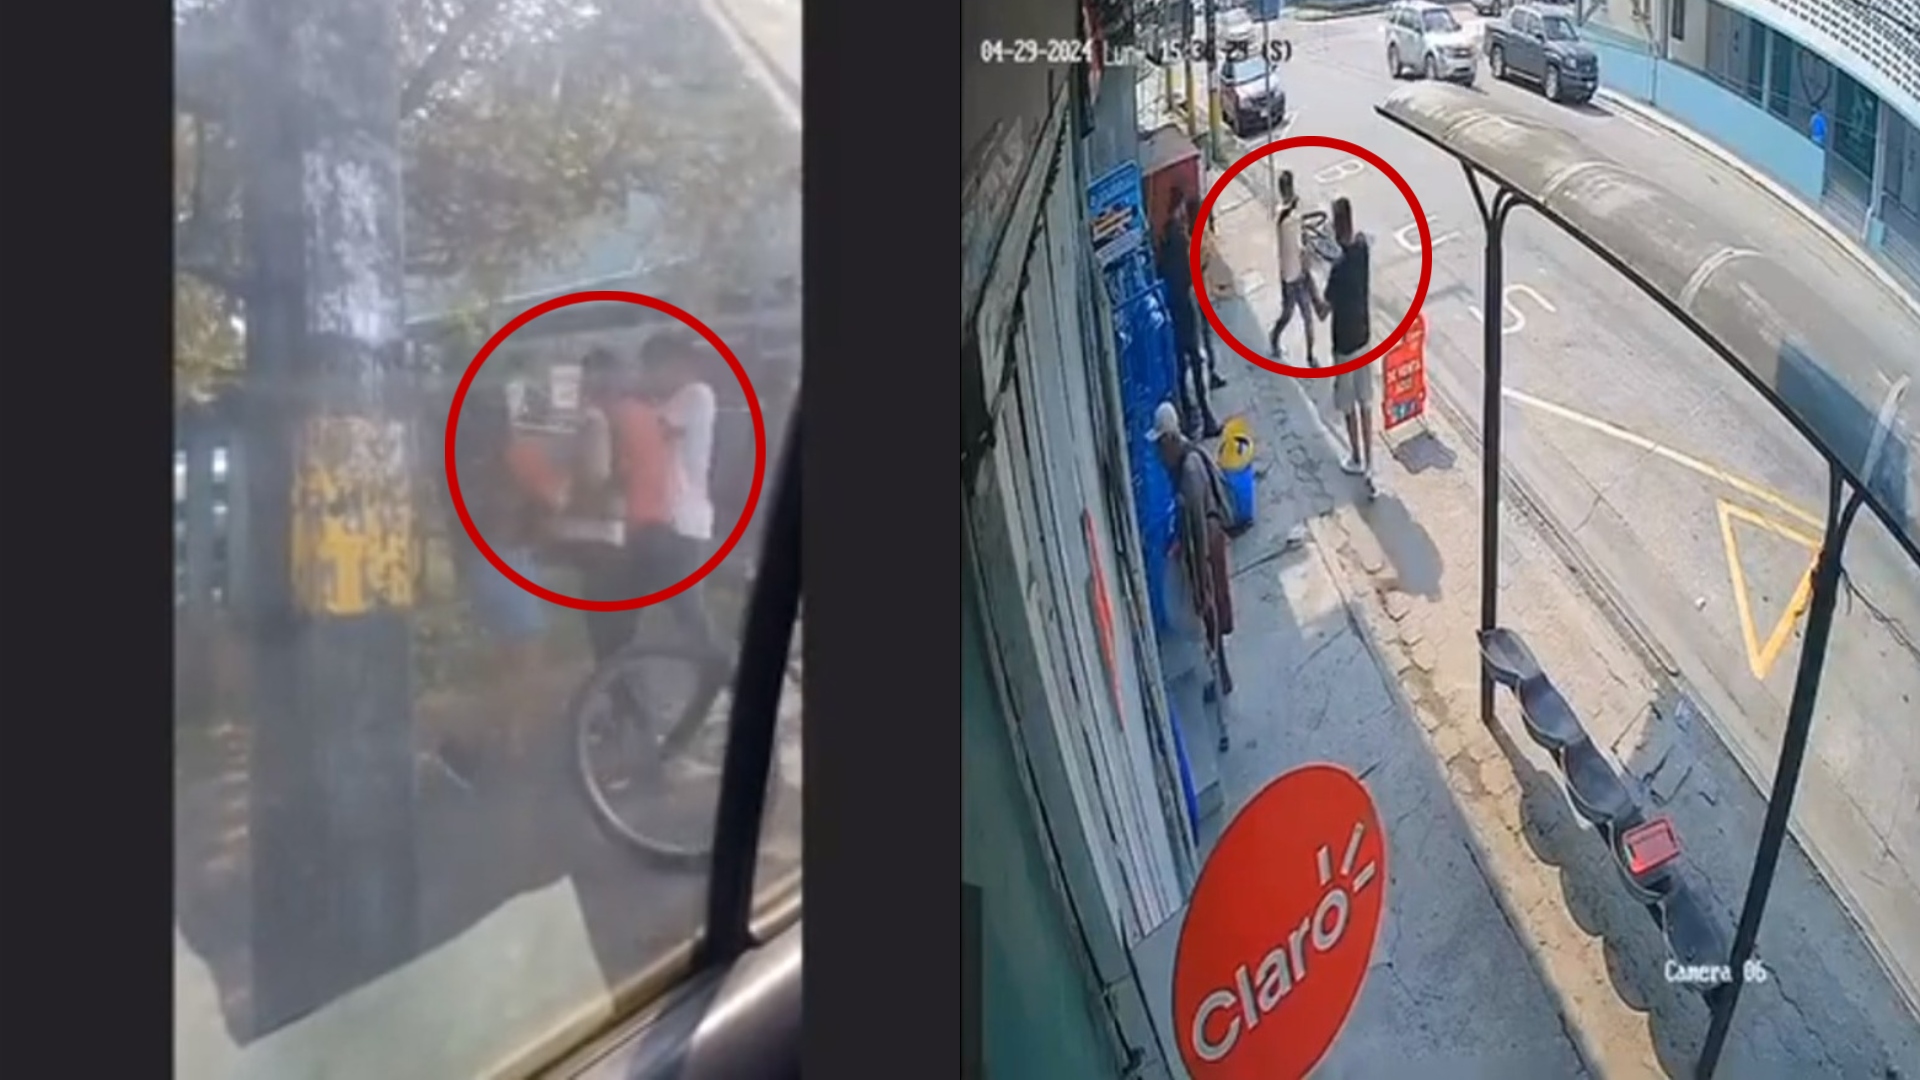 Dos jóvenes asaltan en bicicleta y con pistola en mano en Cortés